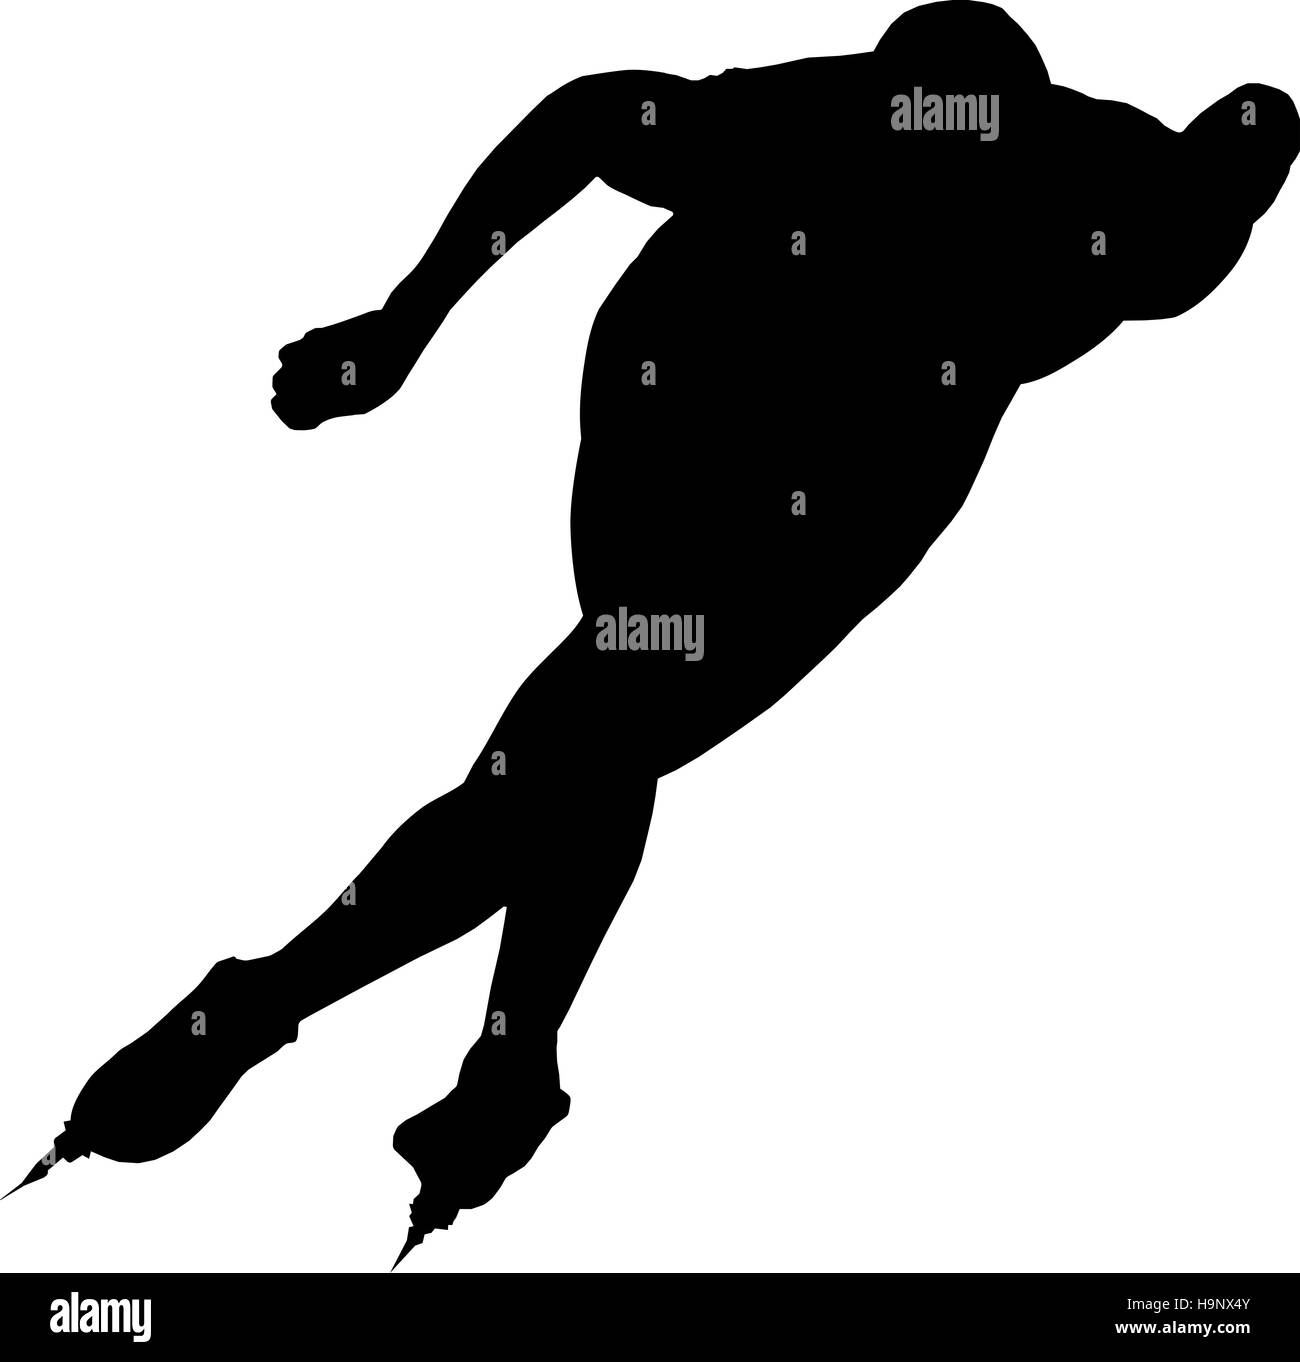 Les patineurs de vitesse homme silhouette noire sur fond blanc vector Illustration Banque D'Images